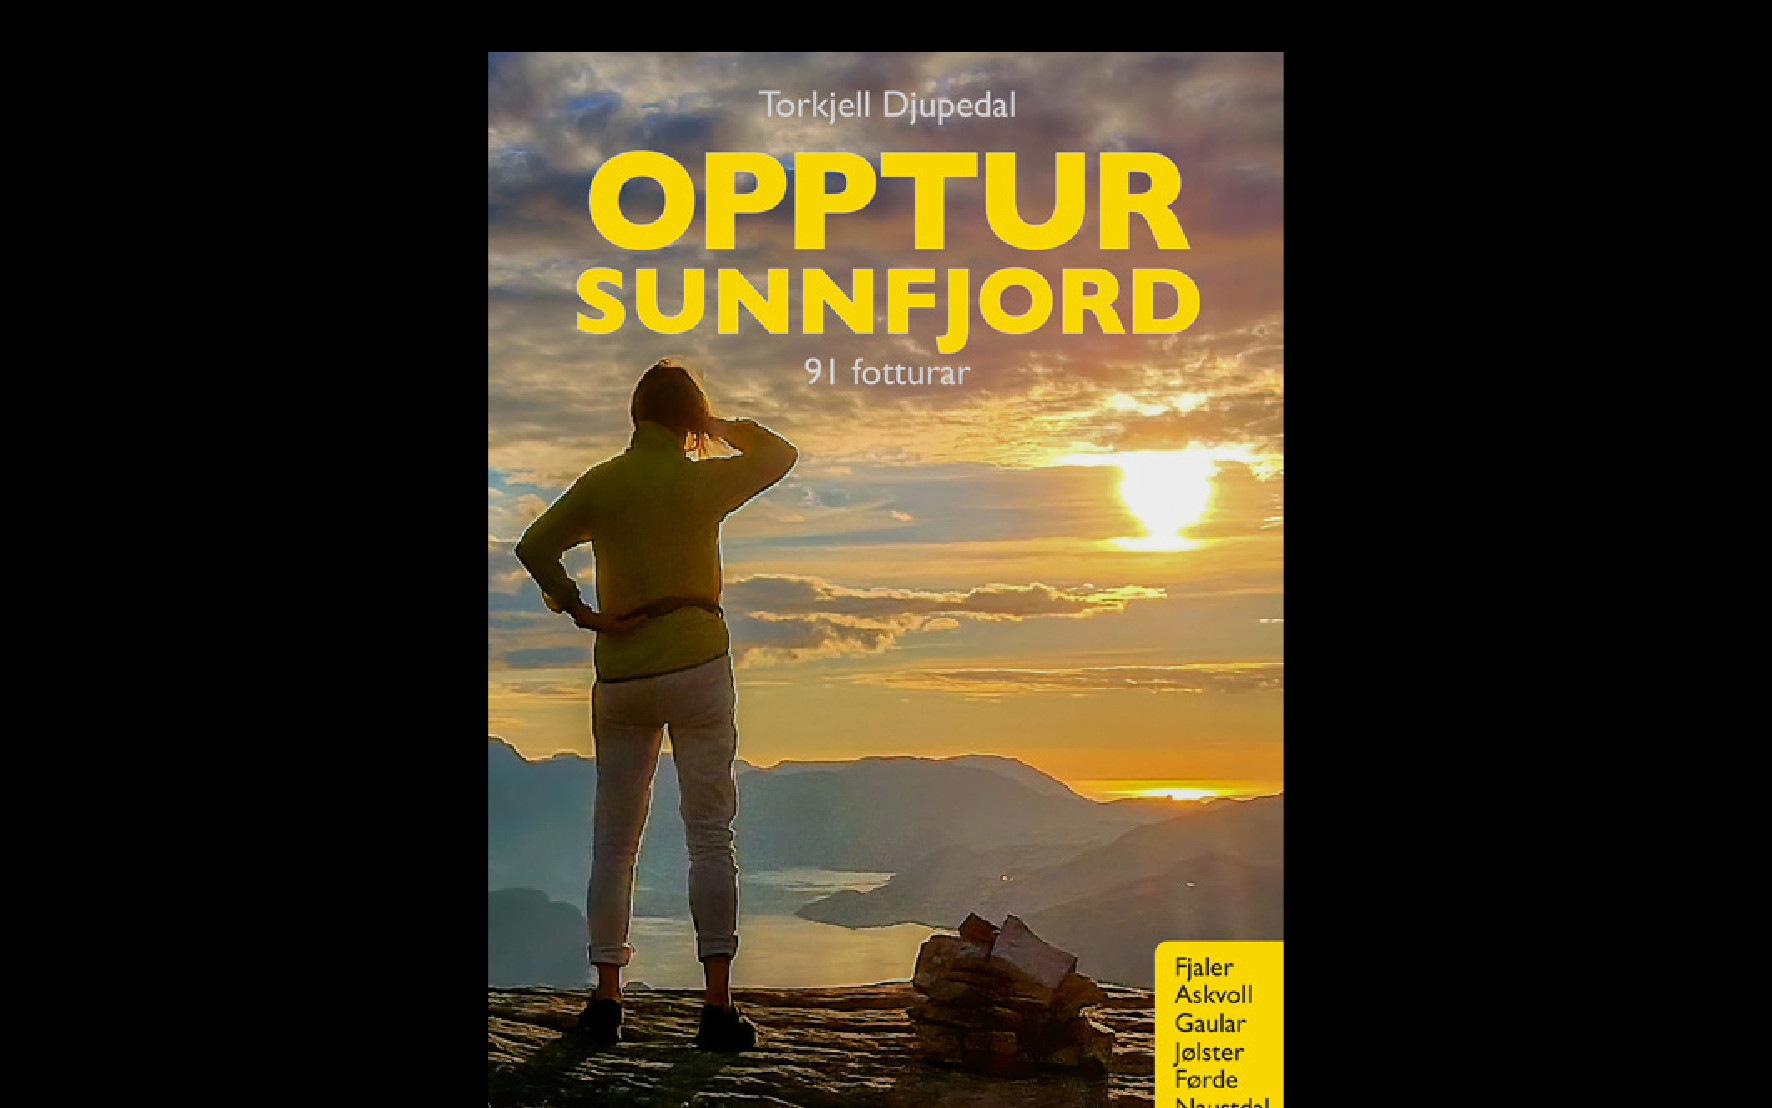 Bilde av boka "Opptur Sunnfjord", viser ei dame på fjelltopp som ser mot horisonten og solnedgang